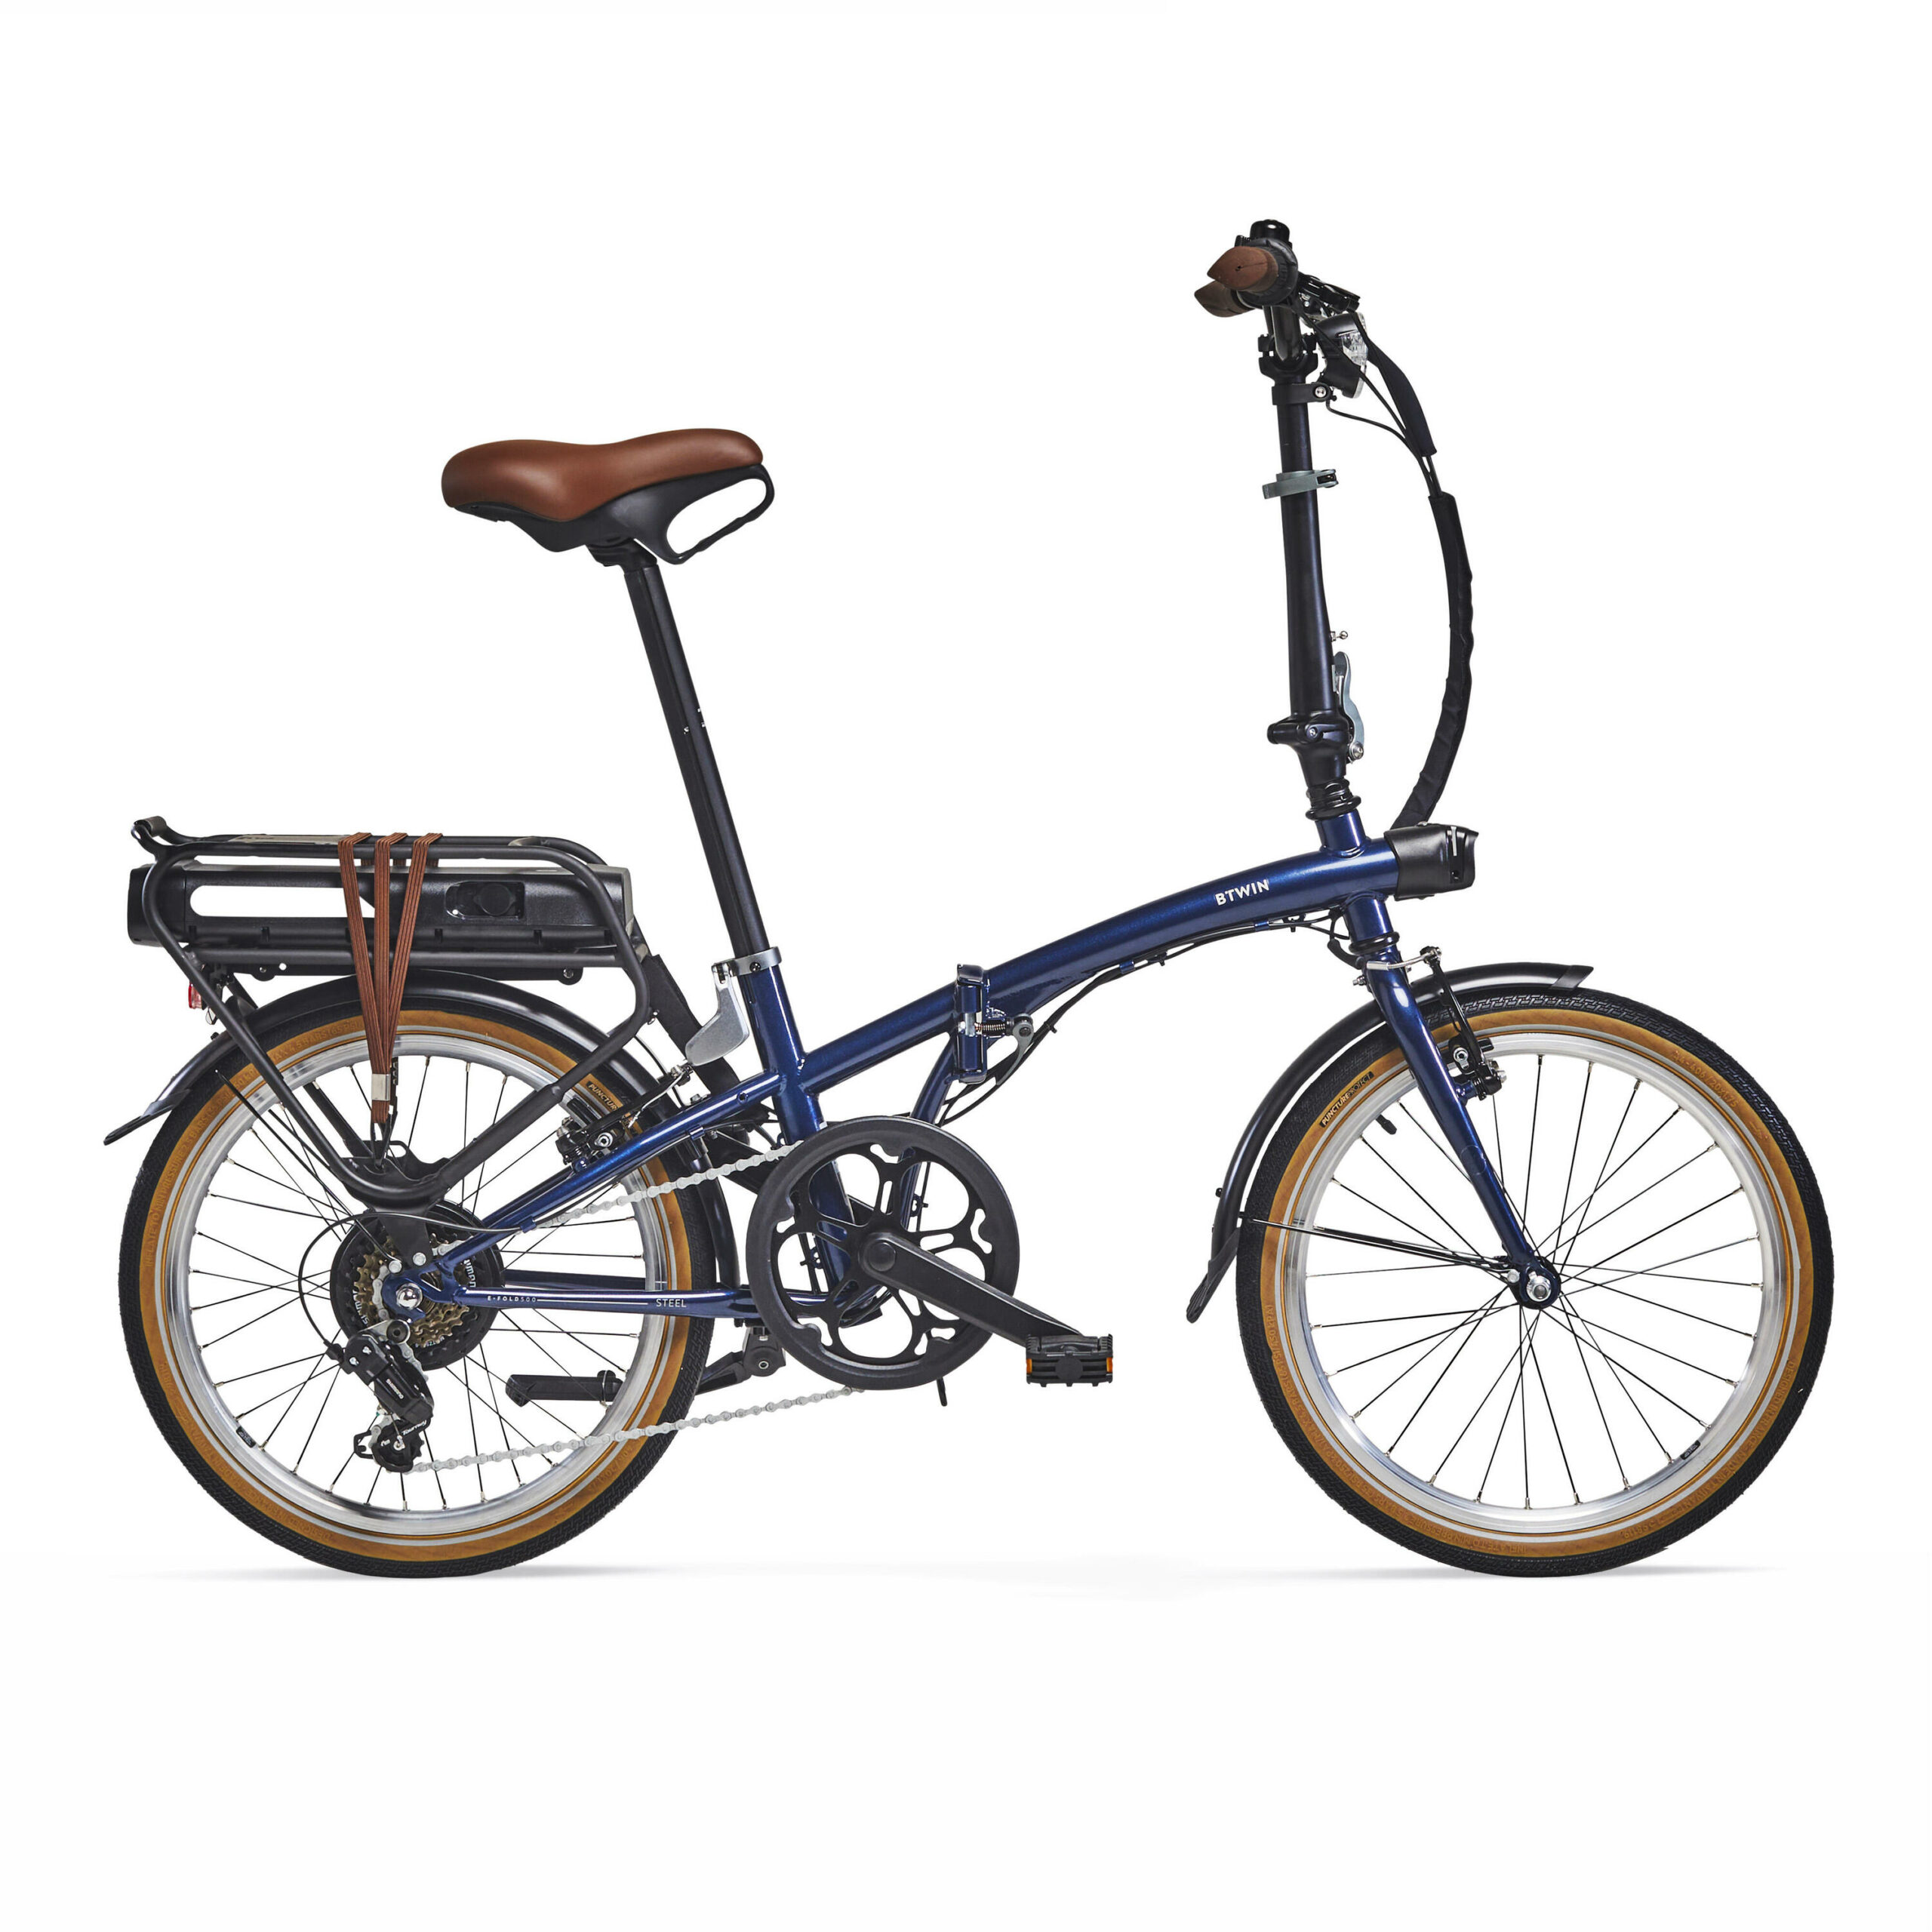 Btwin E Fold 500 et 100 : les nouveaux vélos électriques pliants Decathlon sont disponibles